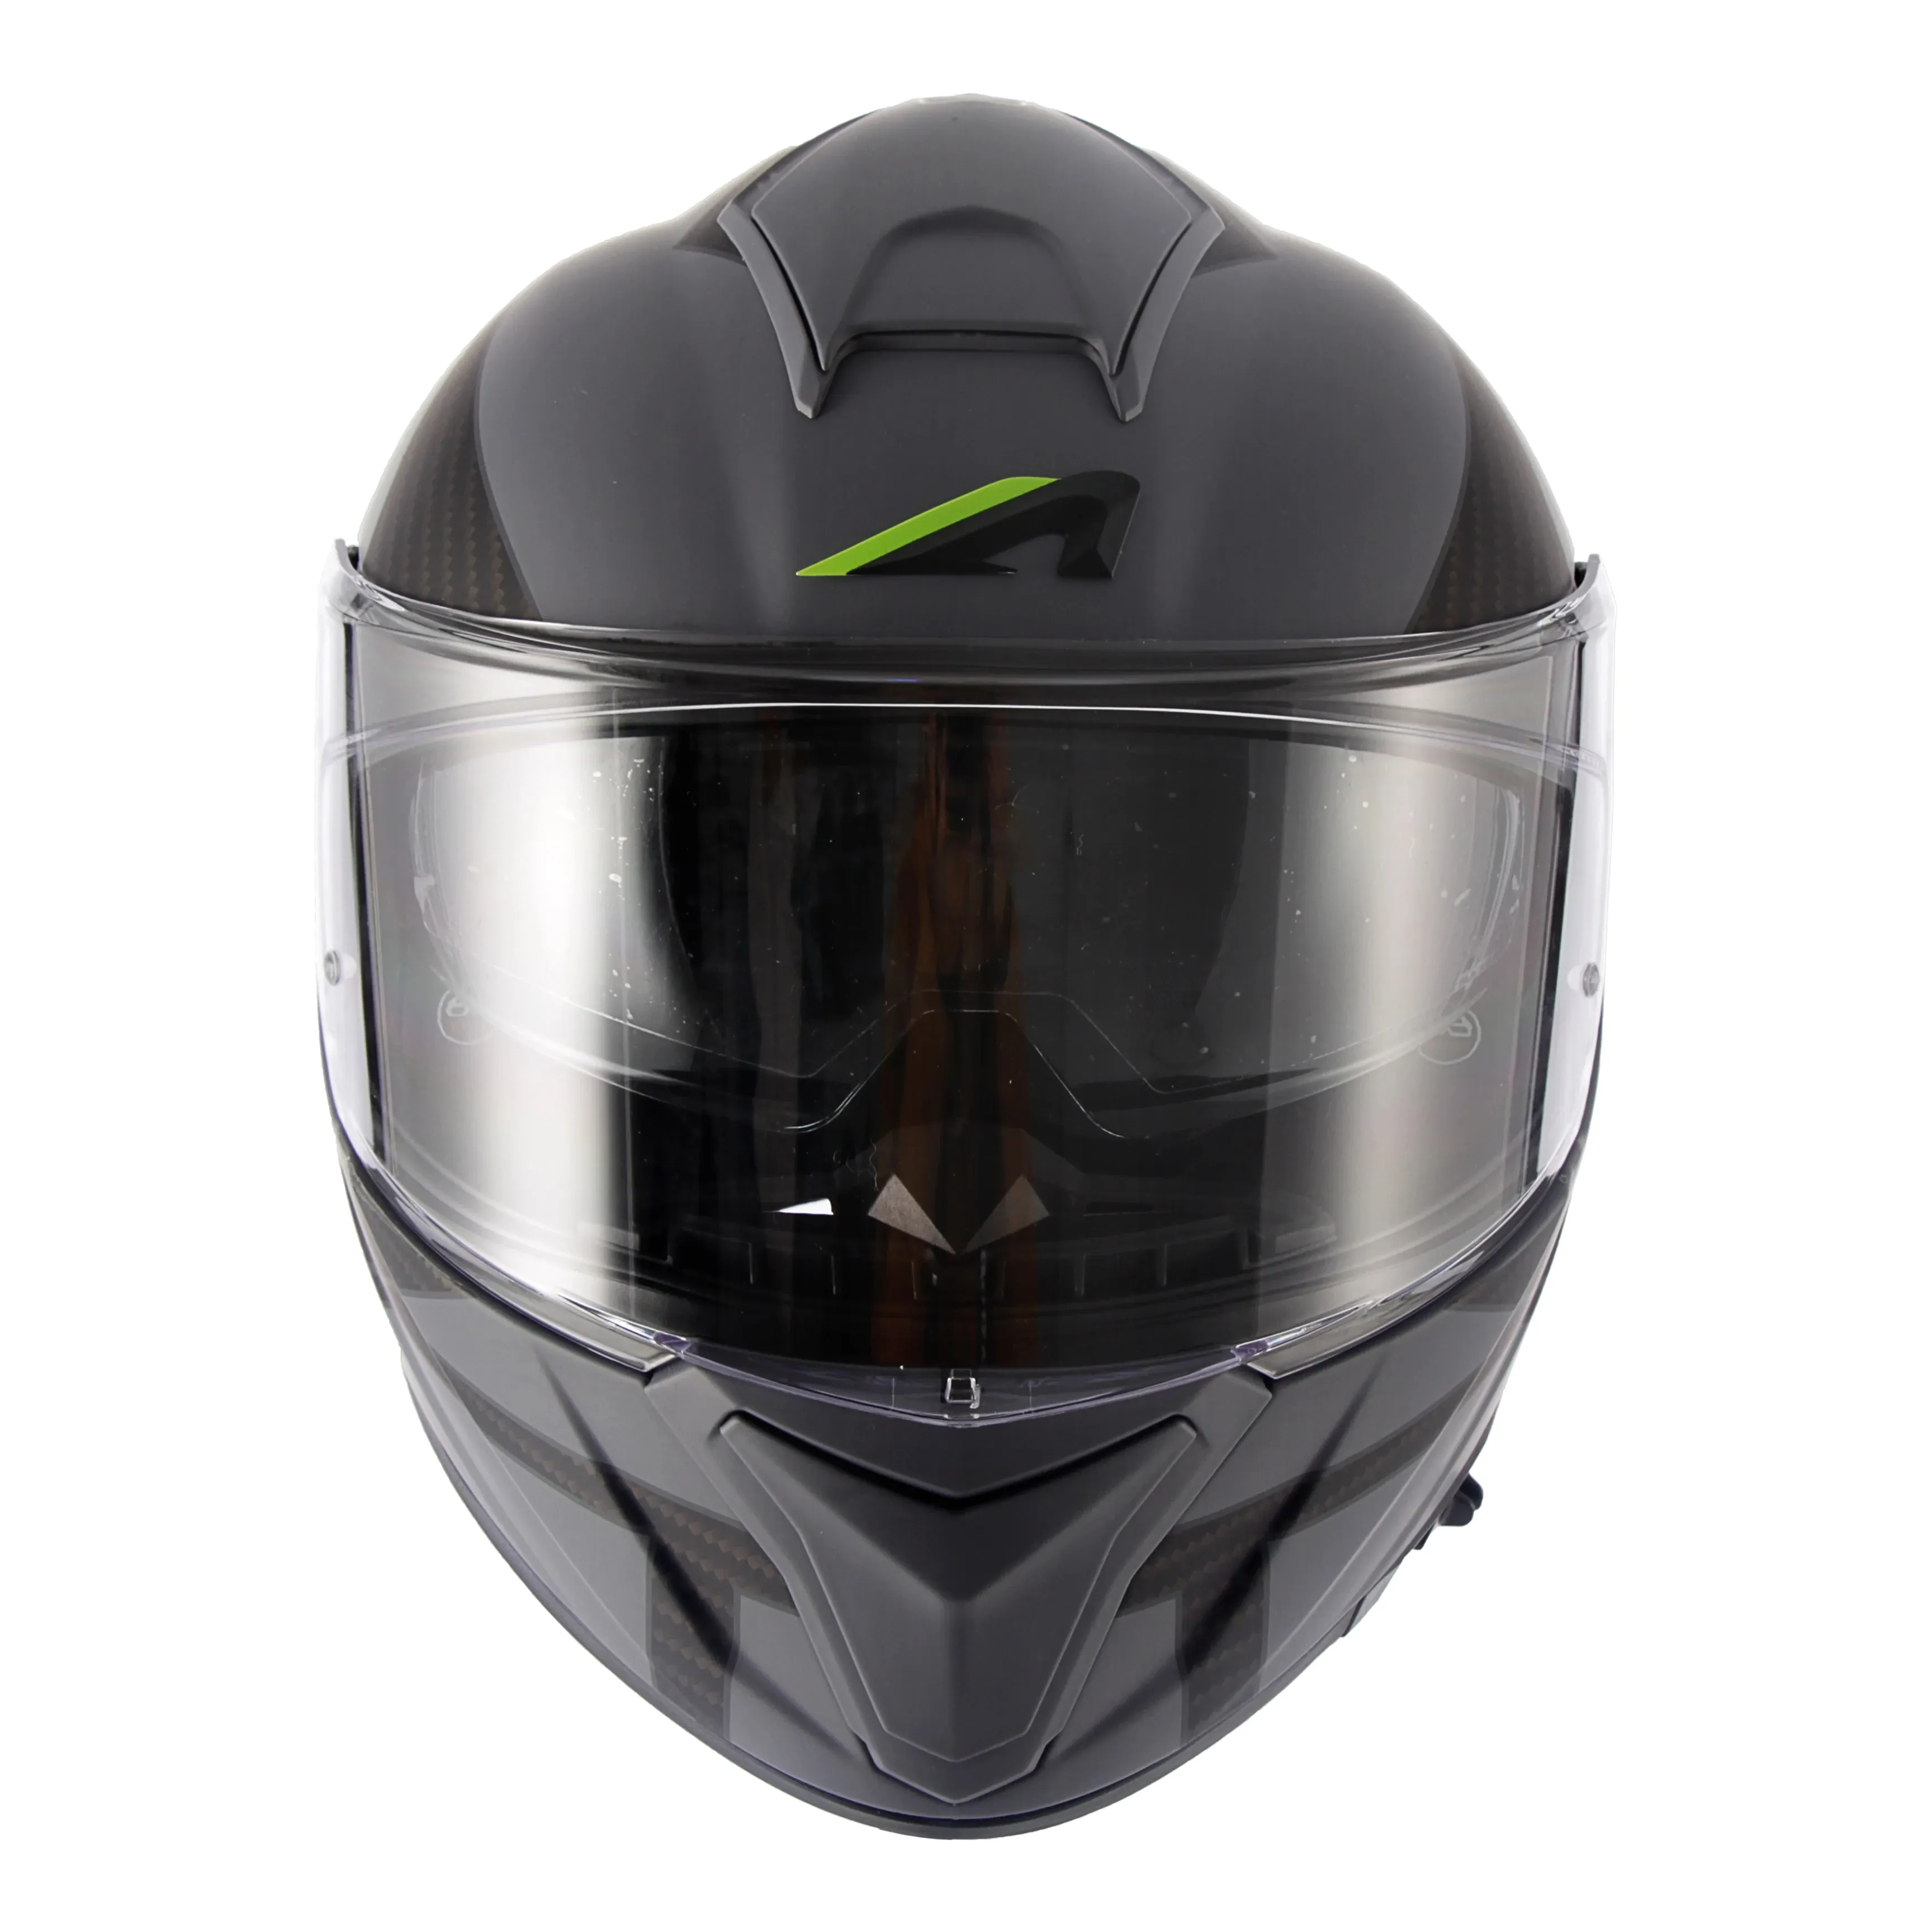 Aston helm terbaik helm wajah penuh abu-abu dirancang terutama untuk pengendara sepeda motor dengan sepeda motor sedang dan besar